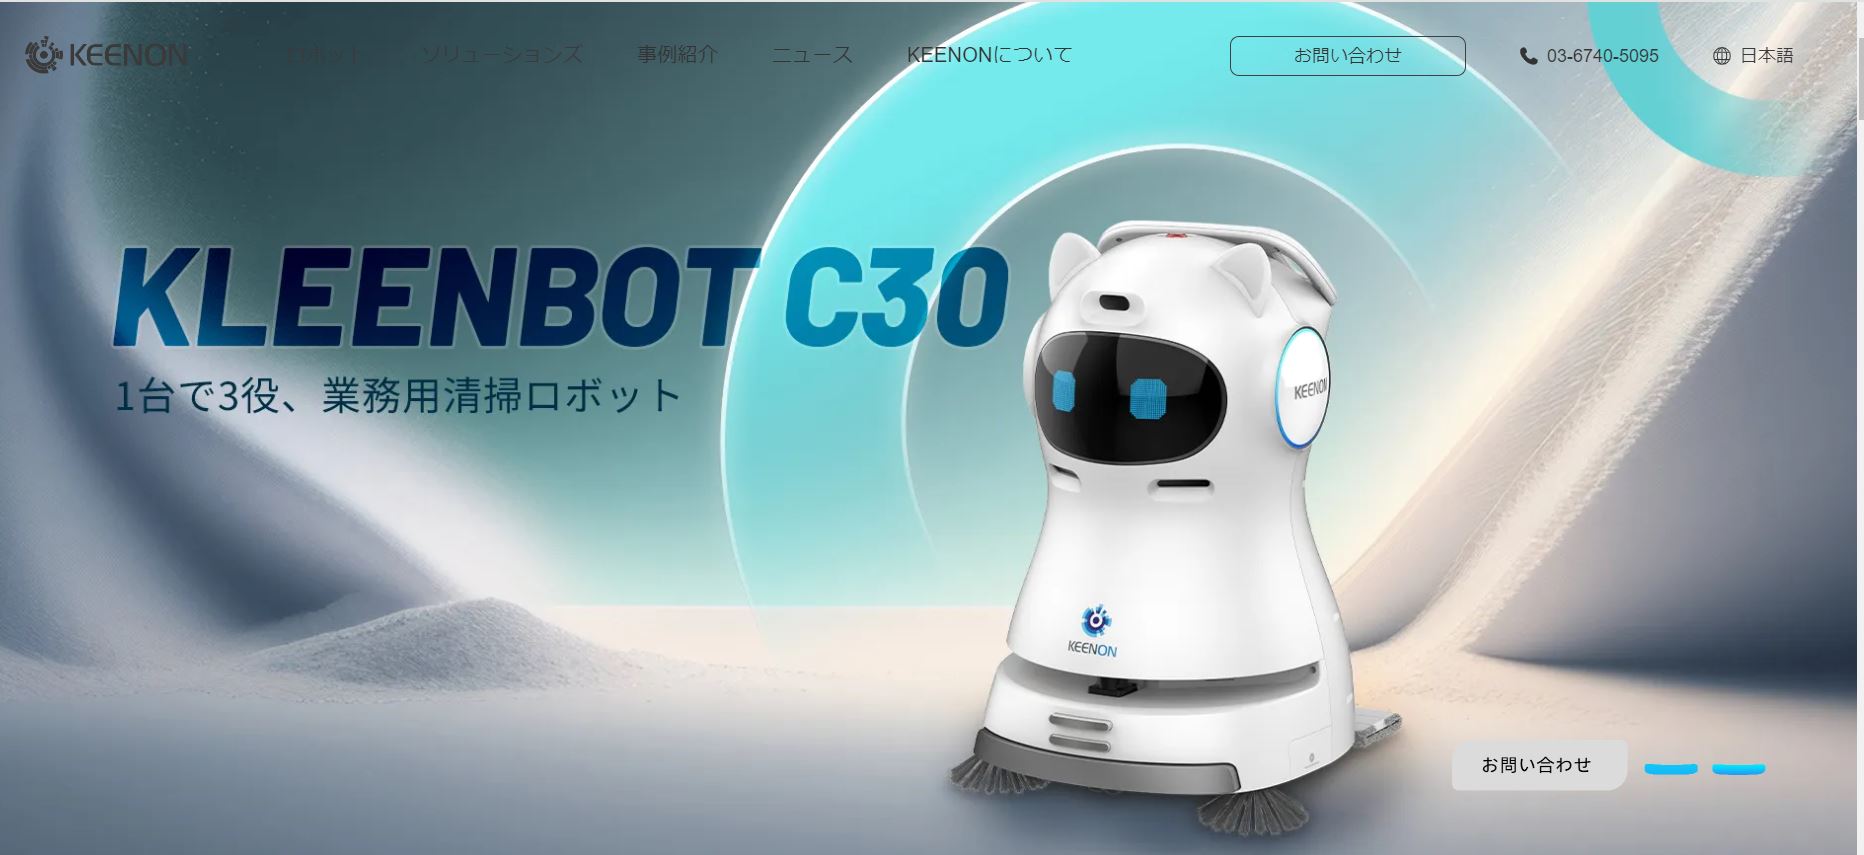 配膳ロボット中国シェア首位のKEENON、日本の業務用清掃ロボット分野に本格参入か